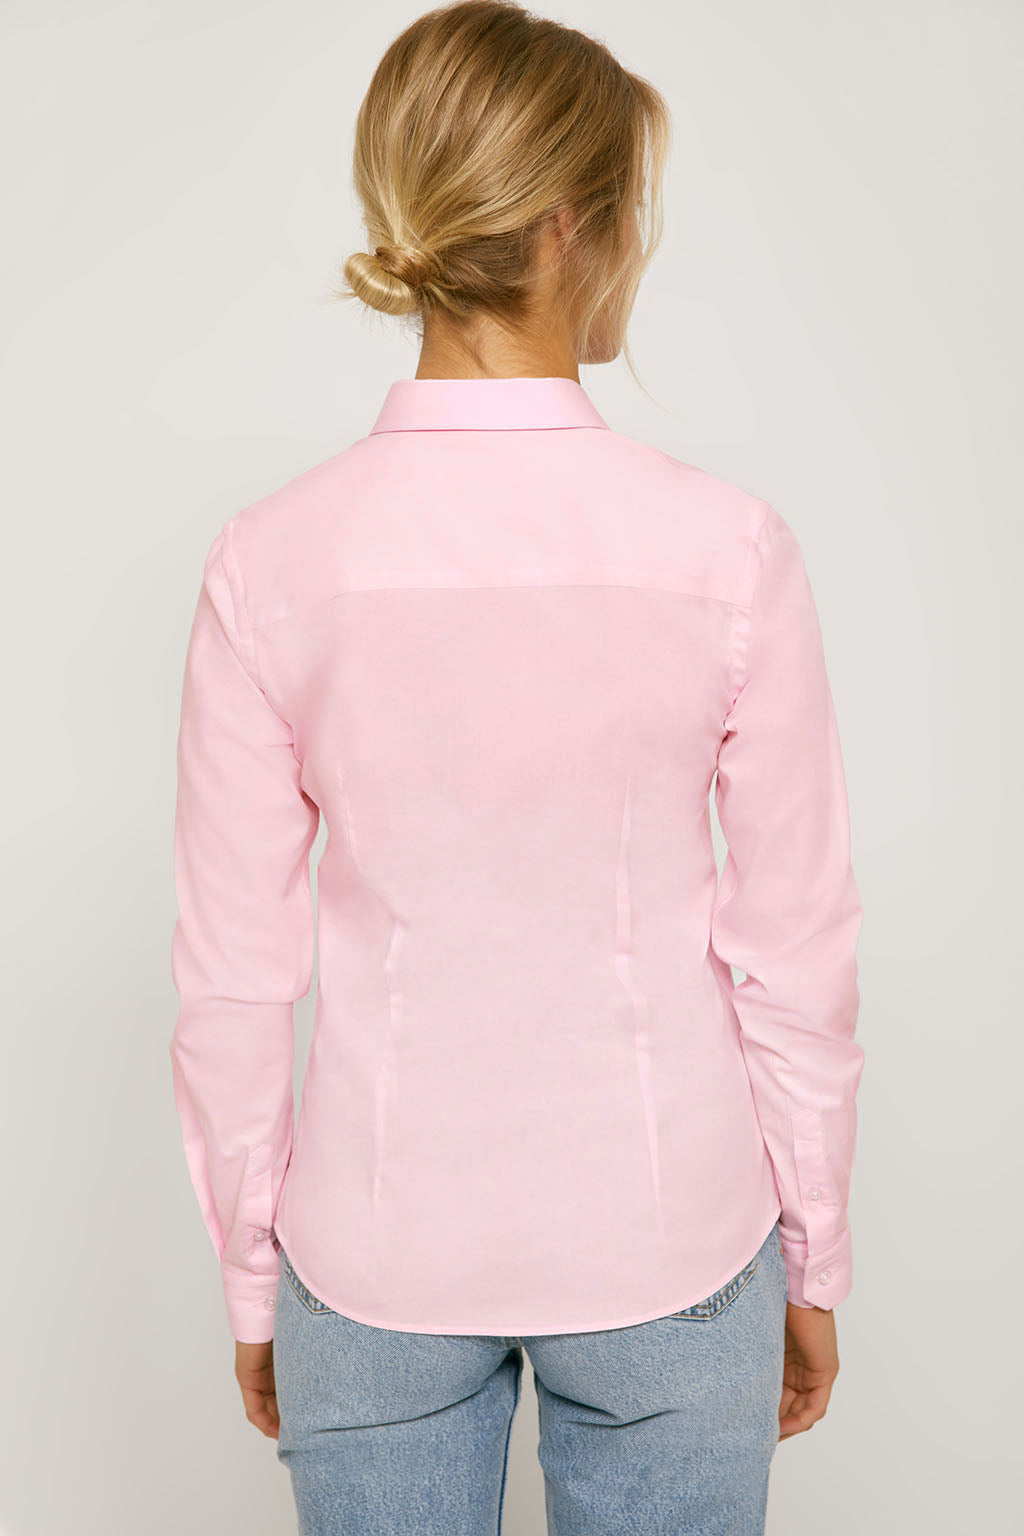 Camisa entallada blanca popelín logo bordado – Polo Club